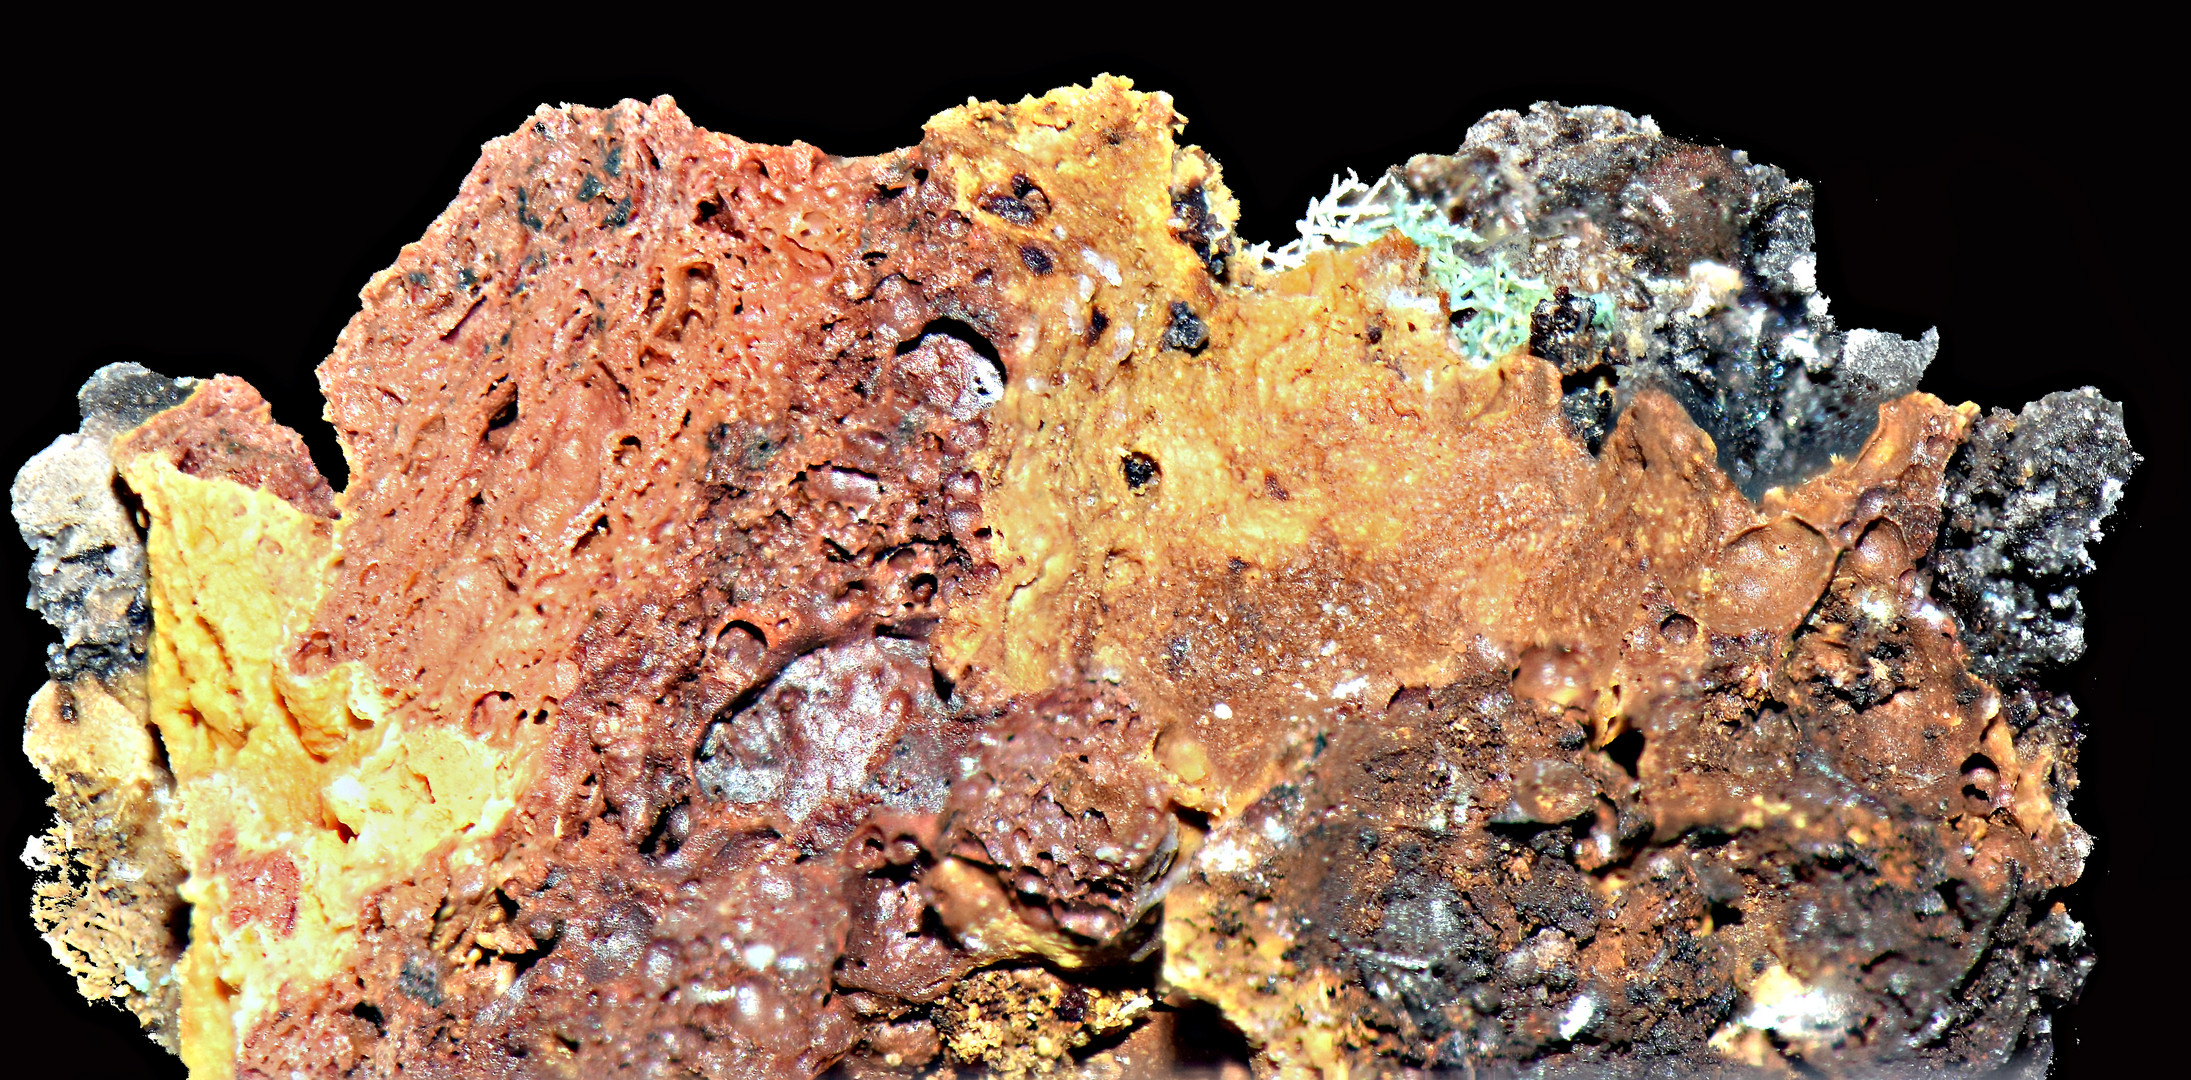 Geheimnissvolle Welt der Mineralien